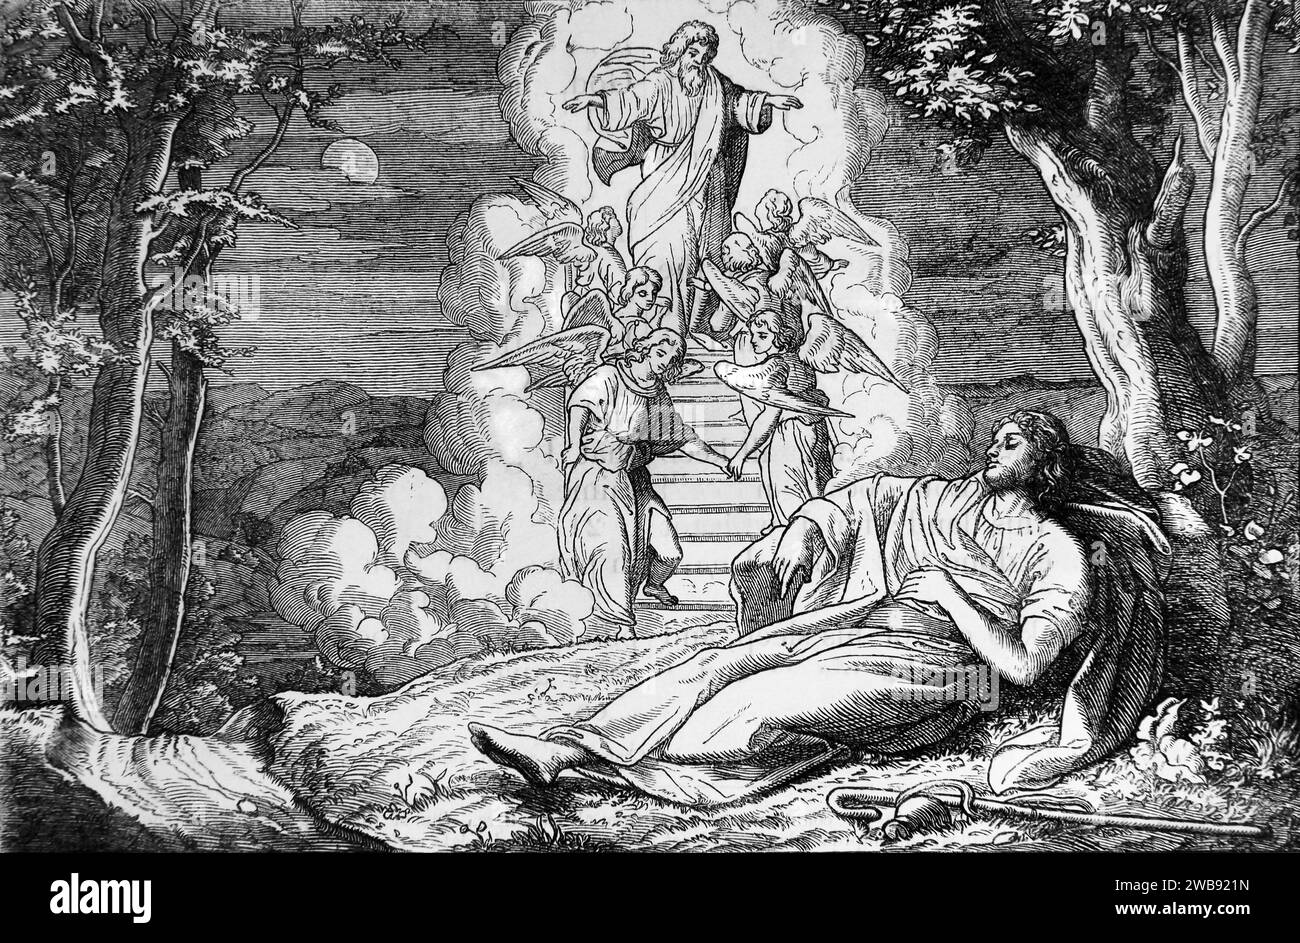 Illustration von Jakobs Traum - während er schläft, sieht Jakob einen Traum von Gott, wie Engel eine Treppe hinauf- und absteigen, die bis zum Himmel reicht (Genesis) Stockfoto